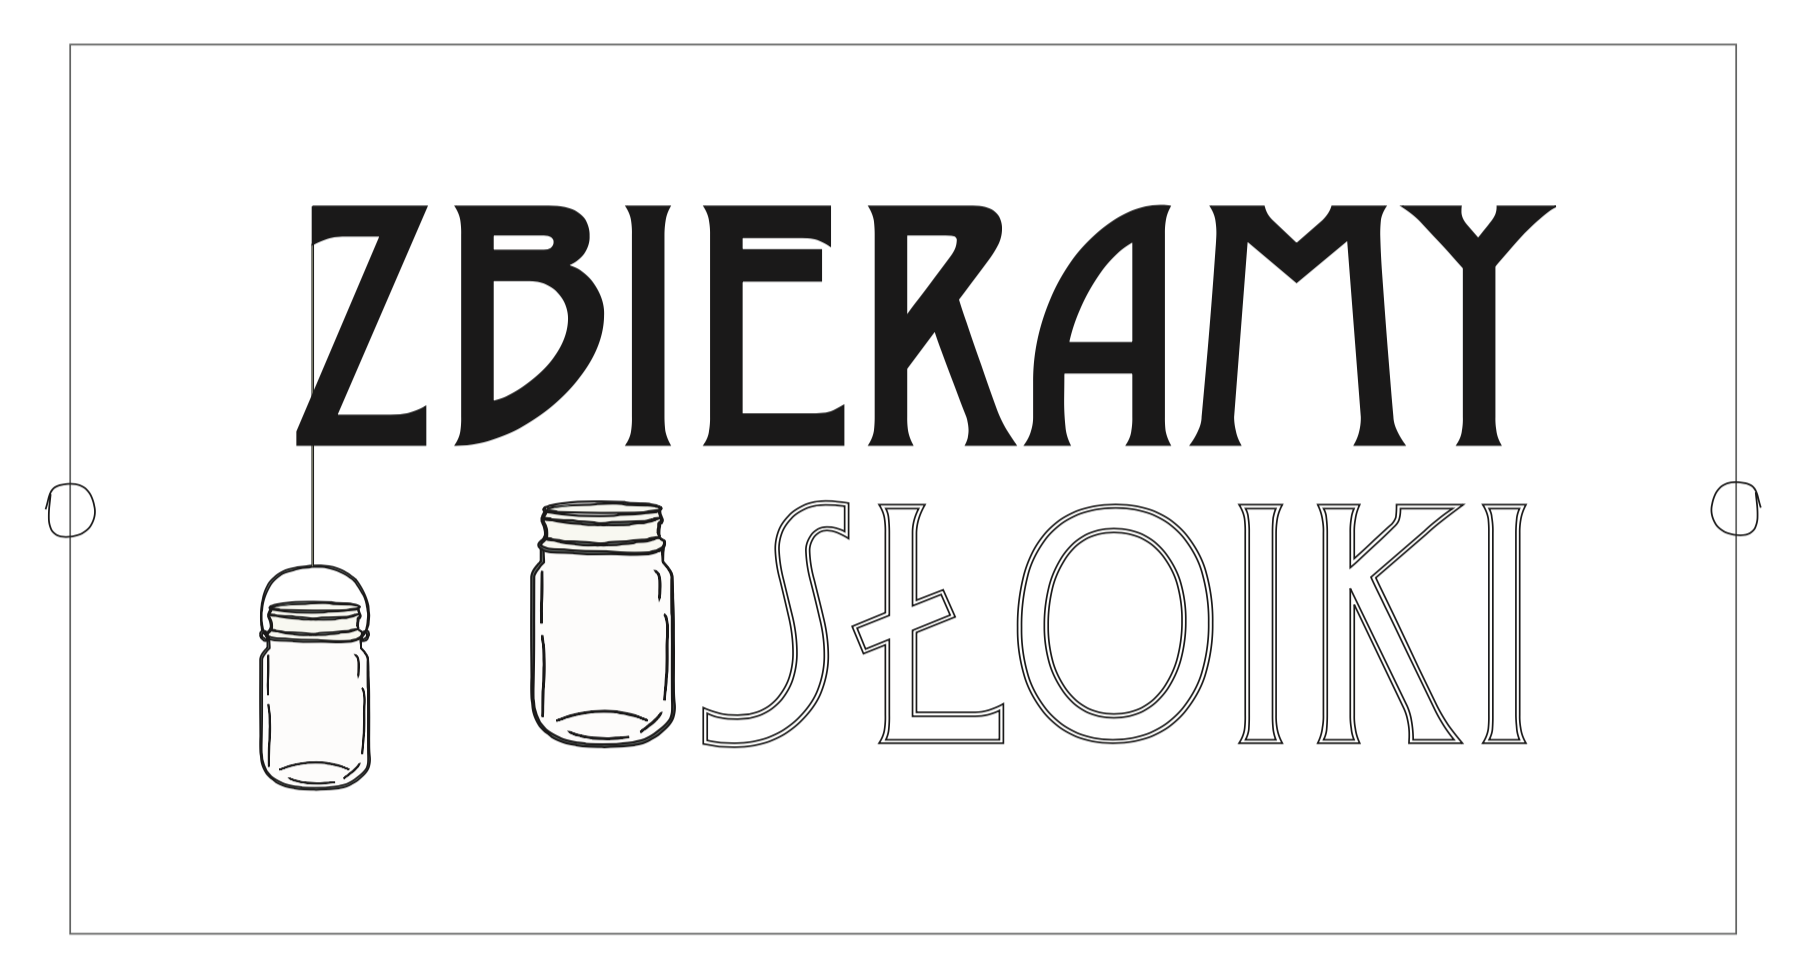 hipoalergiczni-Zbieramy-Słoiki-logo